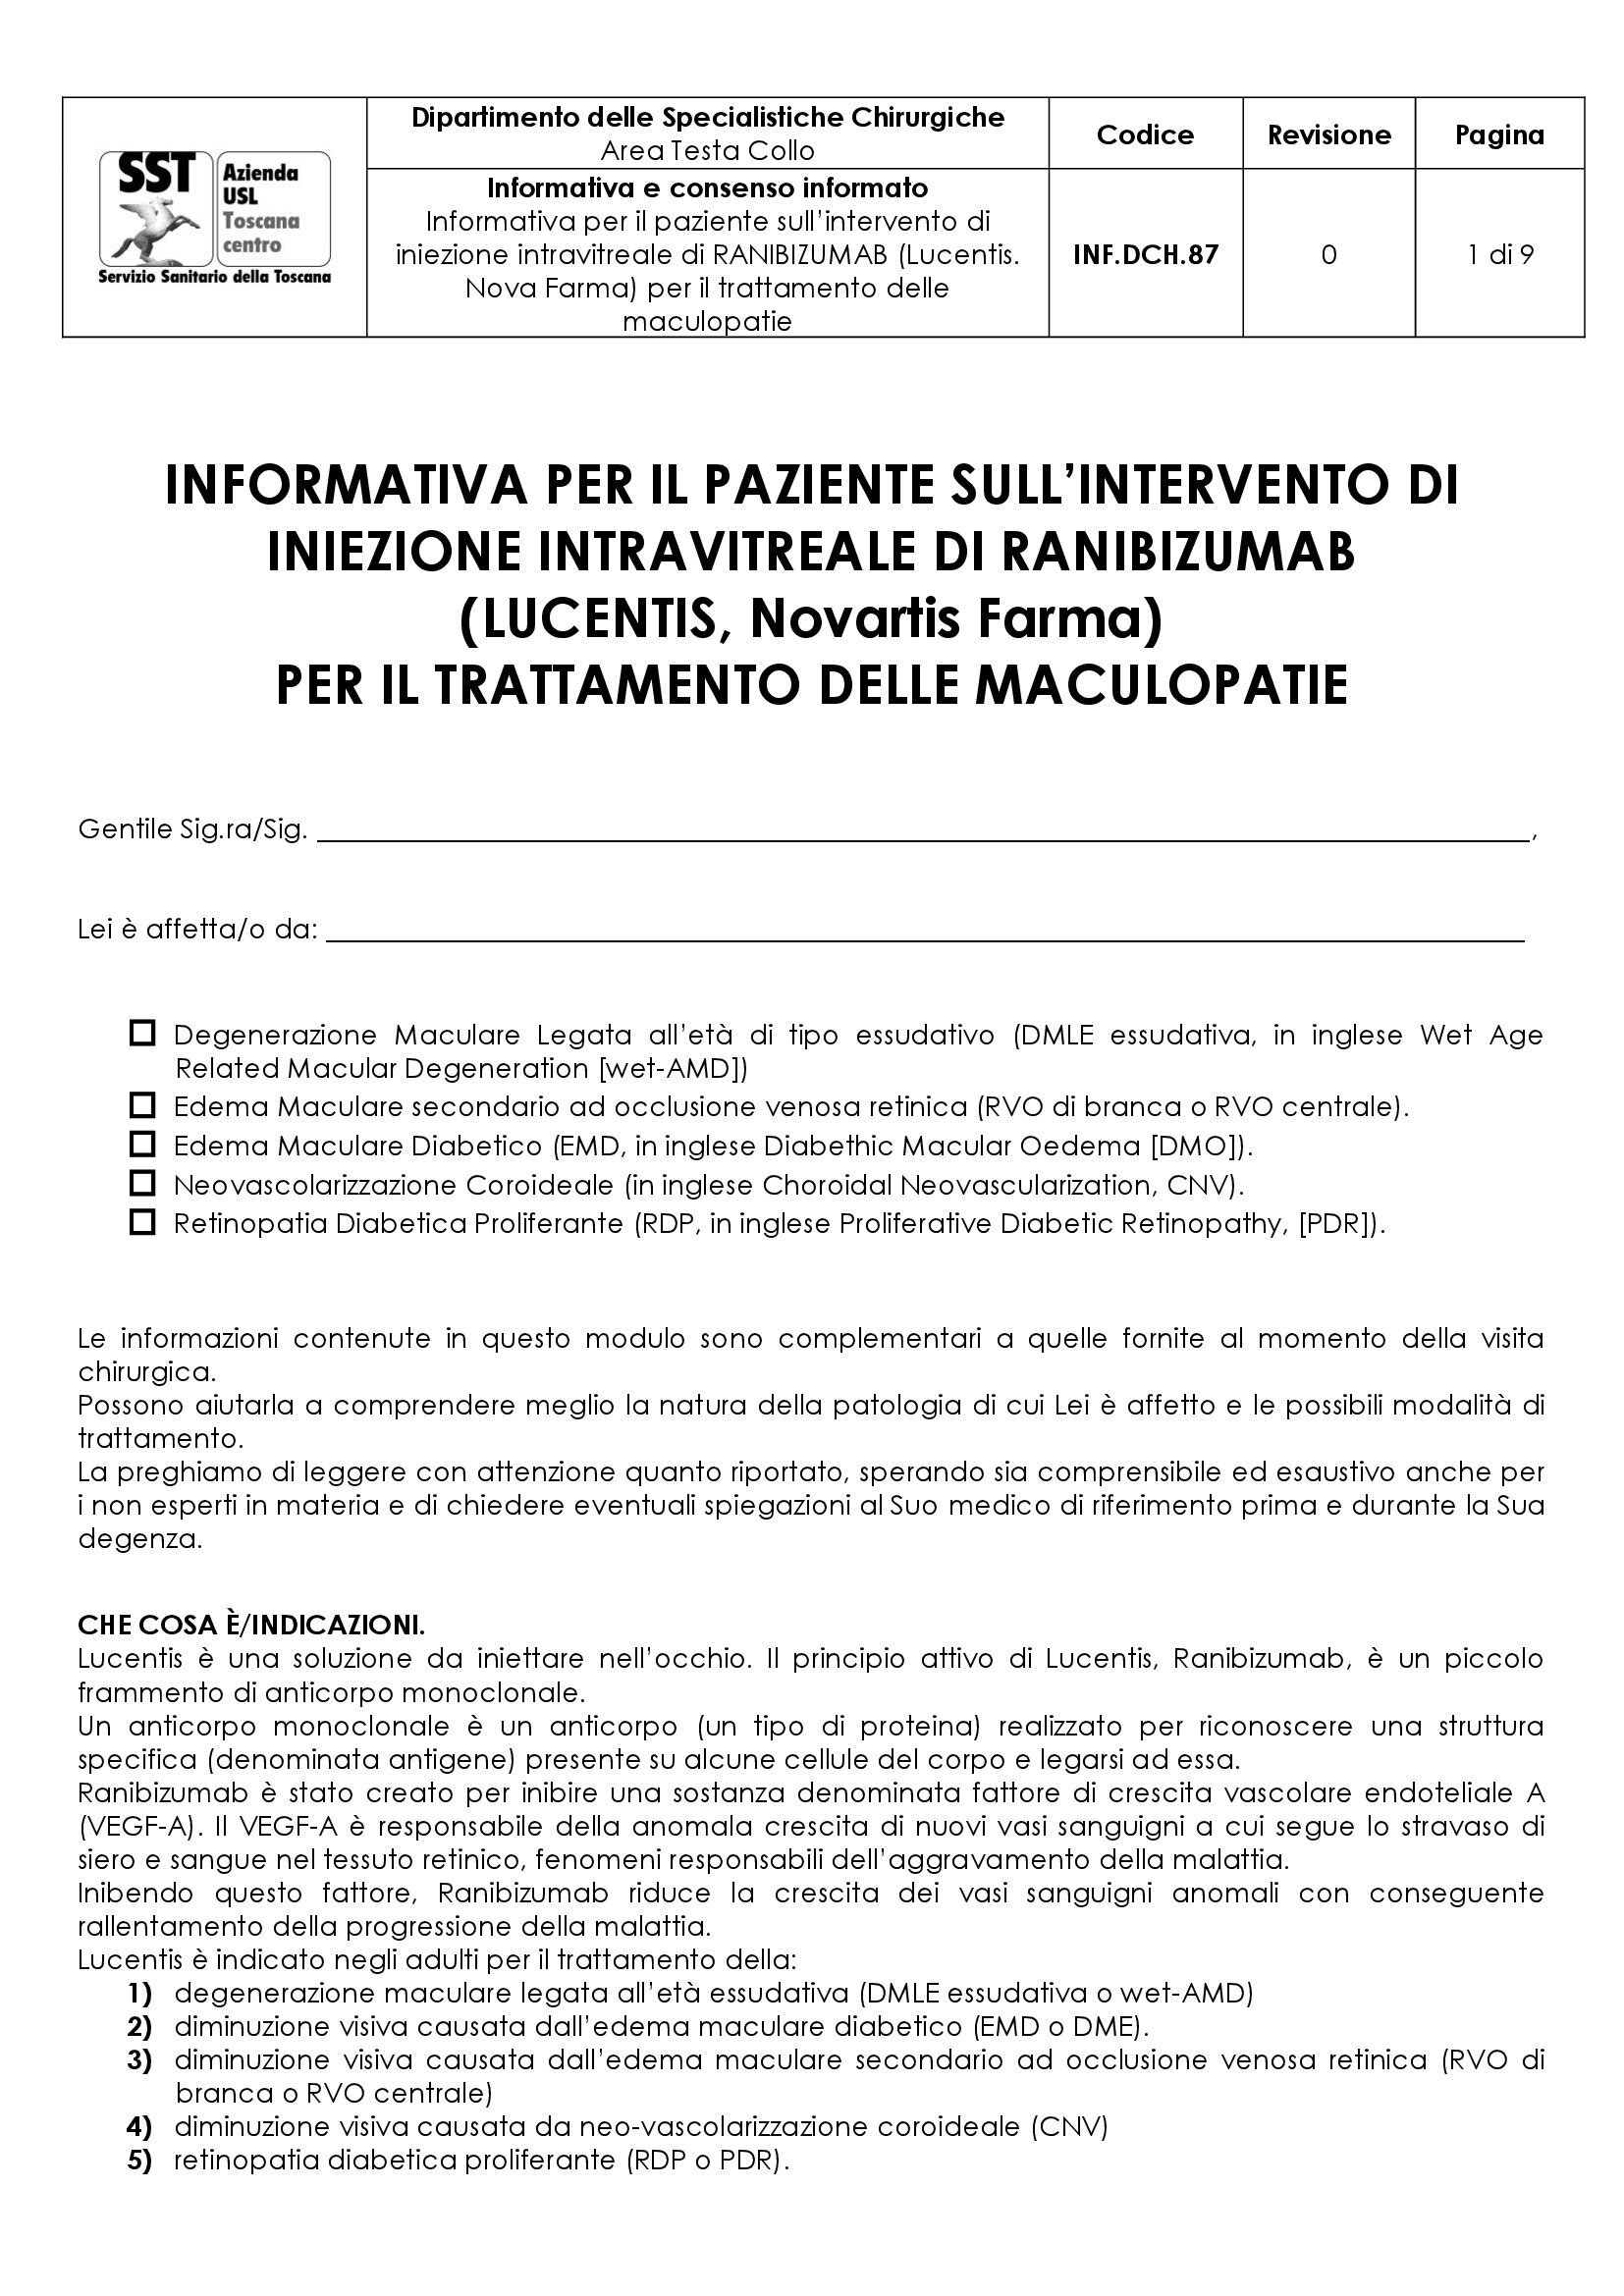 INF.DCH.87 Informativa per il paziente sull’intervento di iniezione intravitreale di RANIBIZUMAB (Lucentis. Nova Farma) per il trattamento delle maculopatie